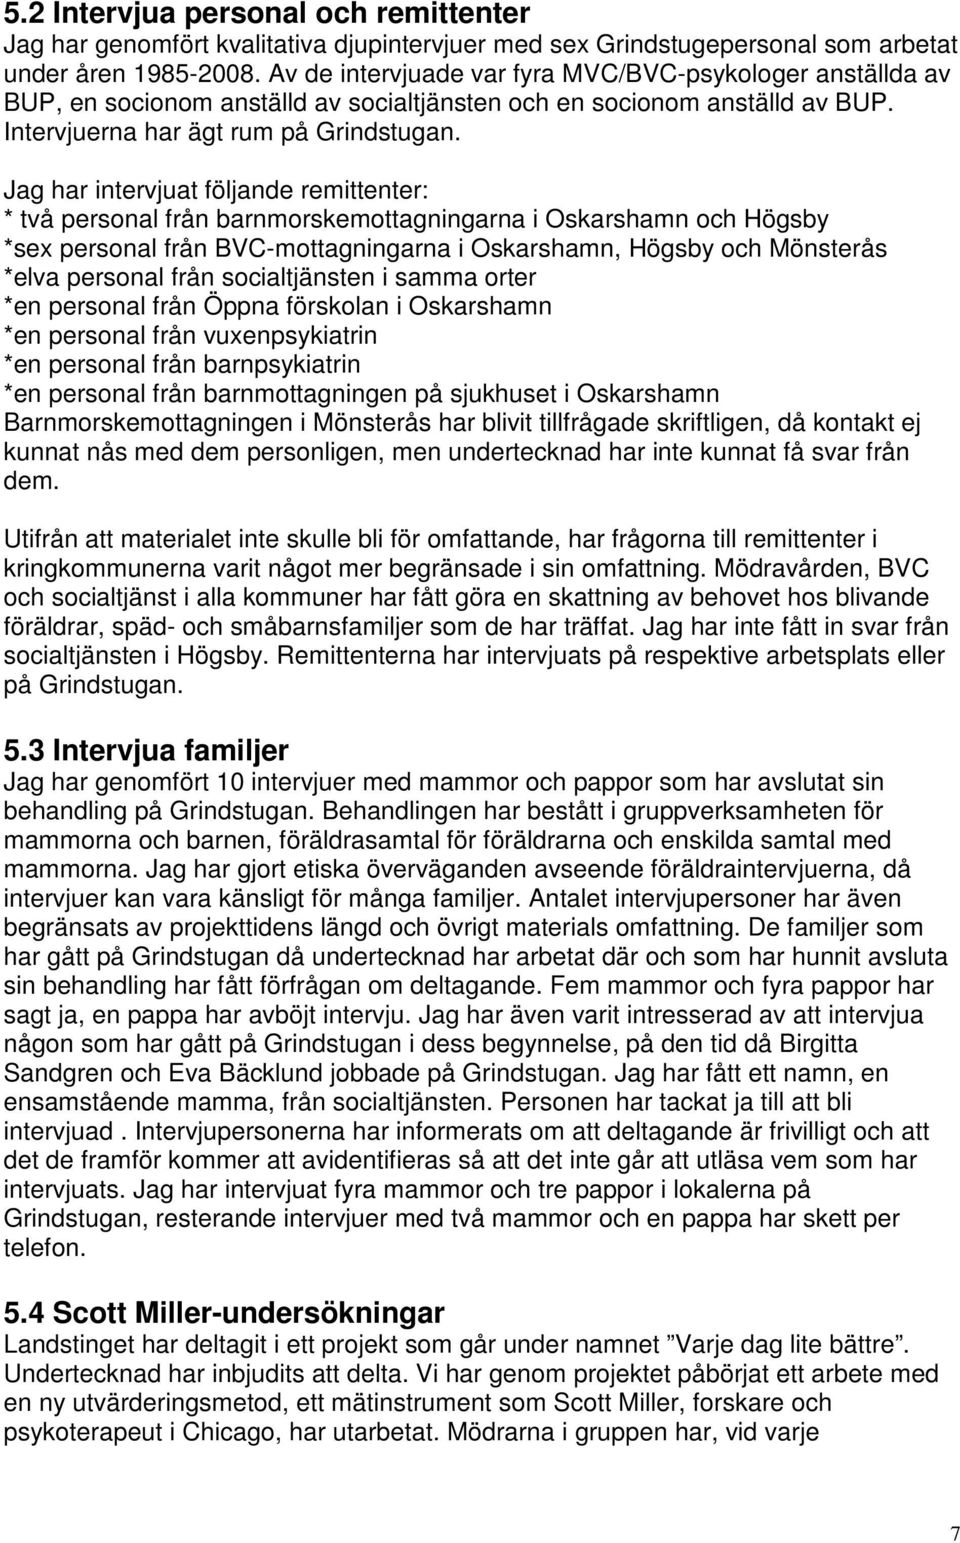 Jag har intervjuat följande remittenter: * två personal från barnmorskemottagningarna i Oskarshamn och Högsby *sex personal från BVC-mottagningarna i Oskarshamn, Högsby och Mönsterås *elva personal